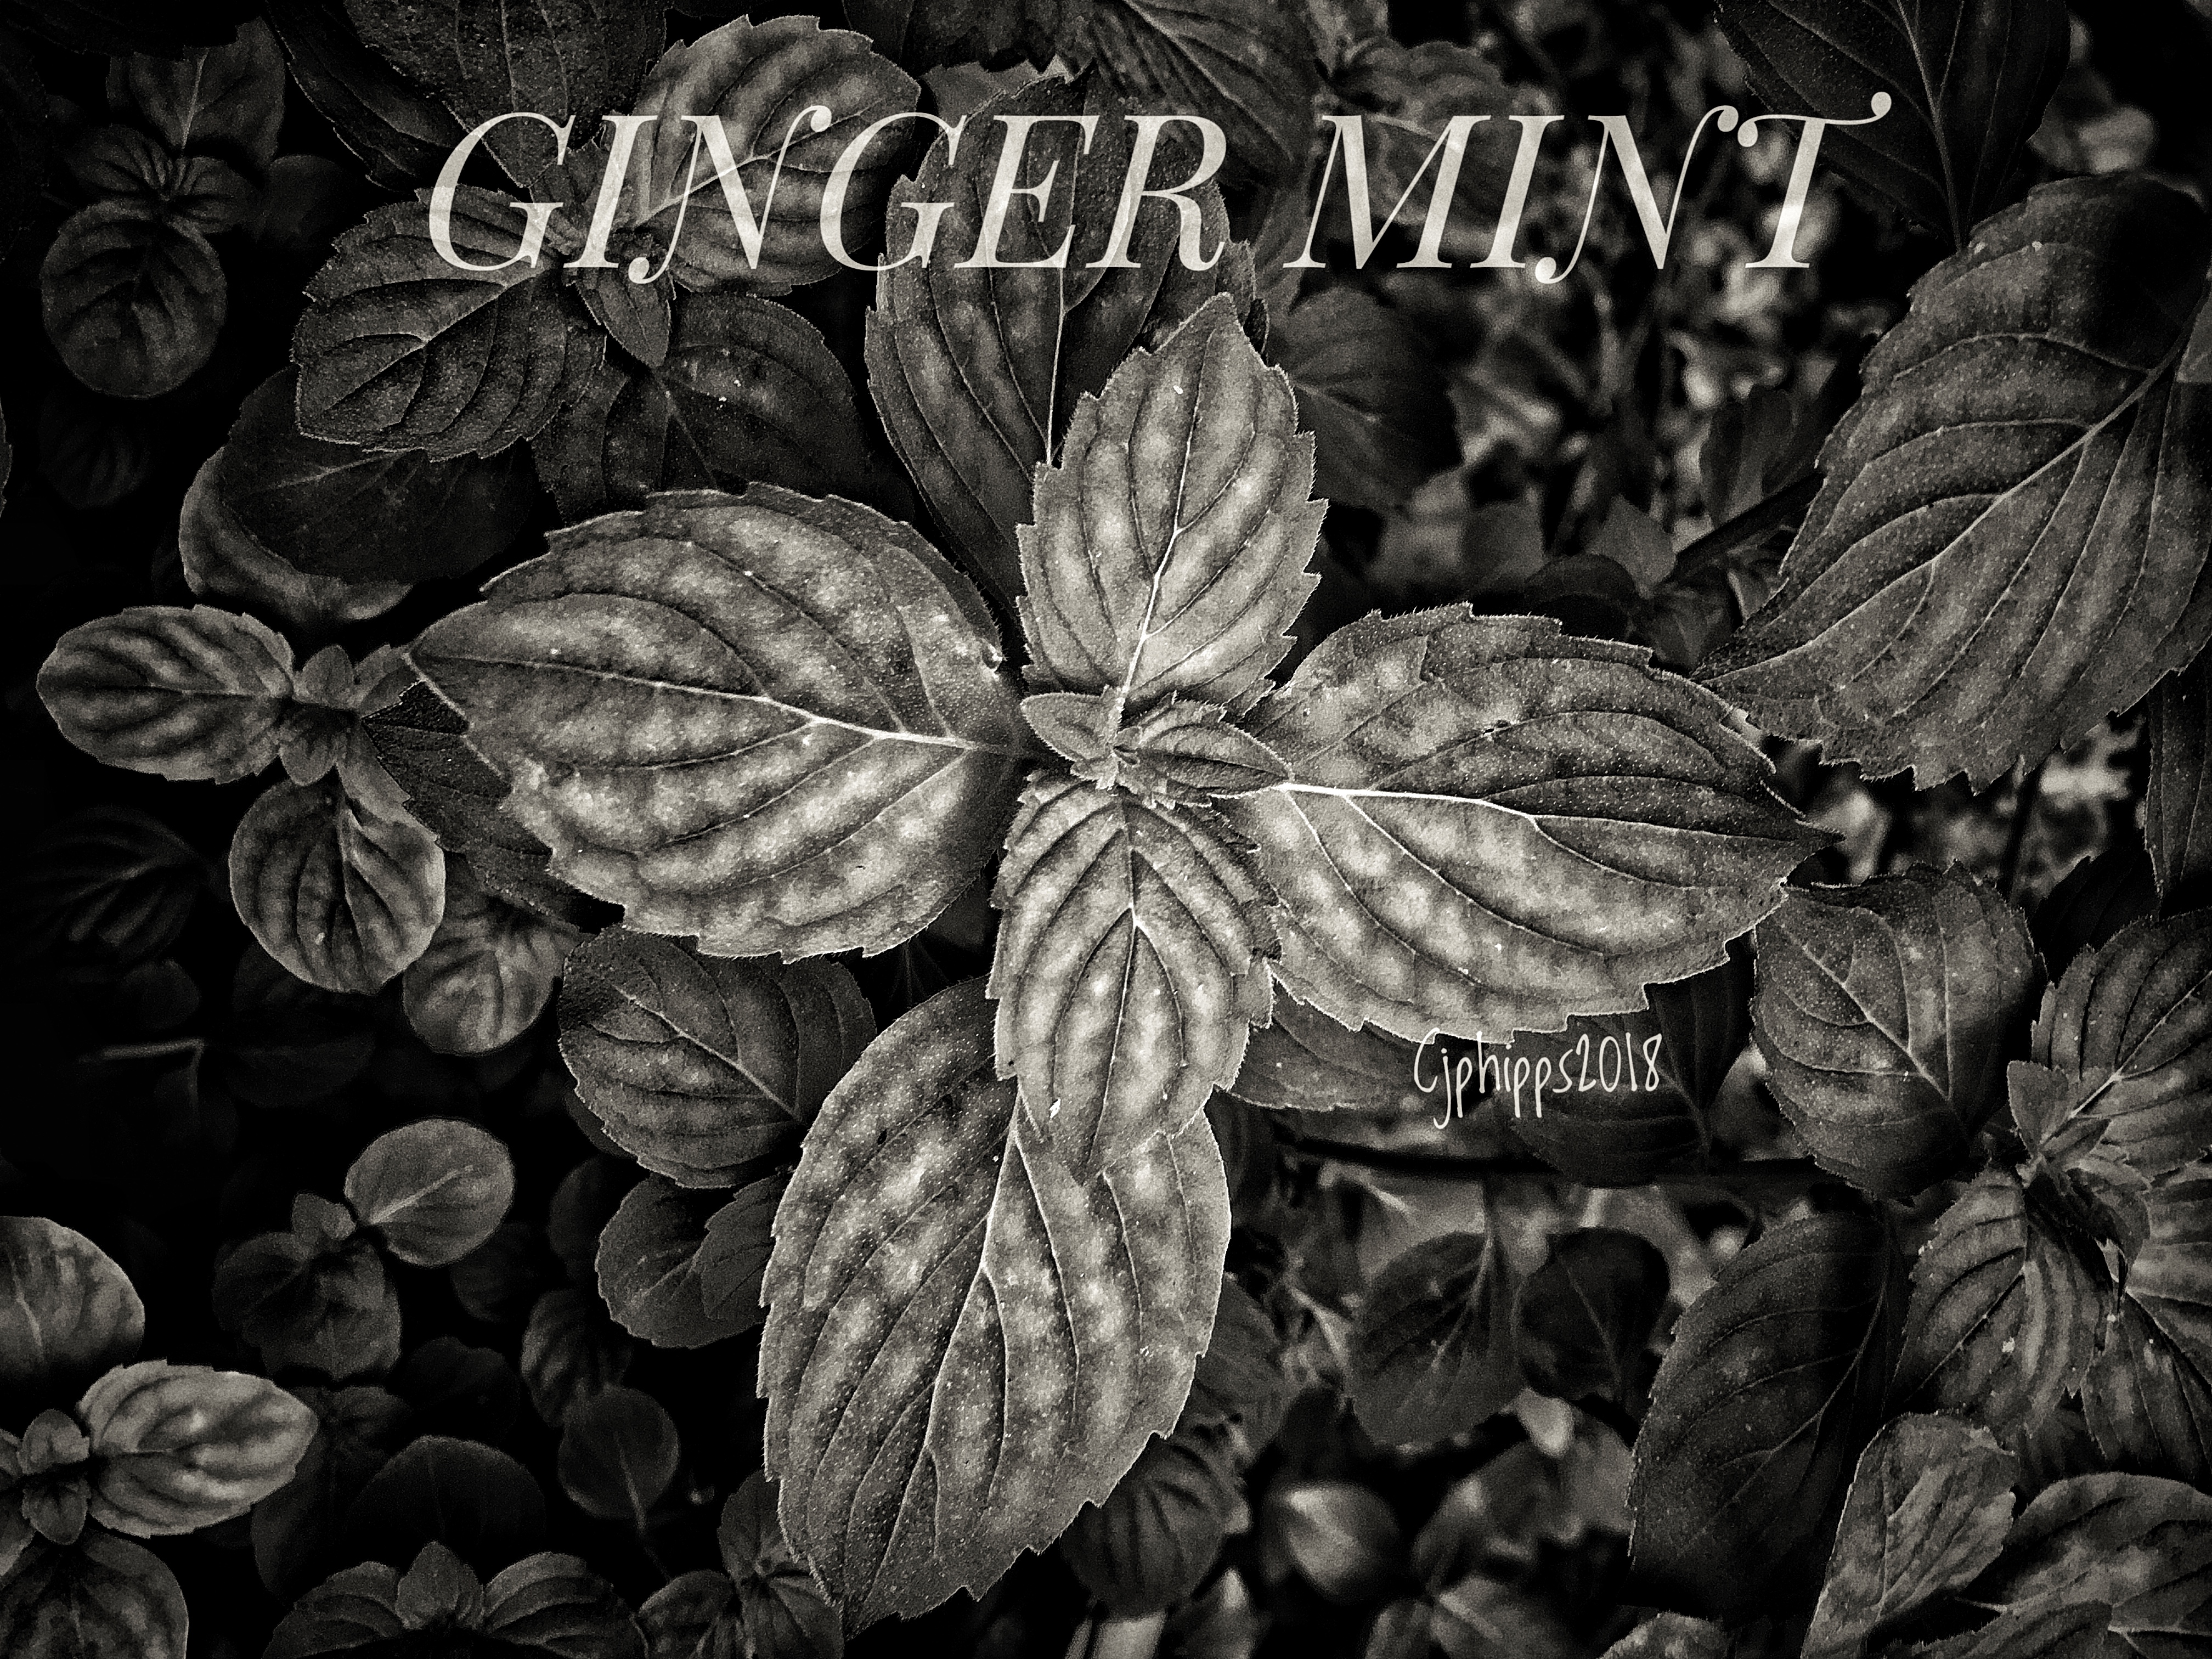 Ginger Mint